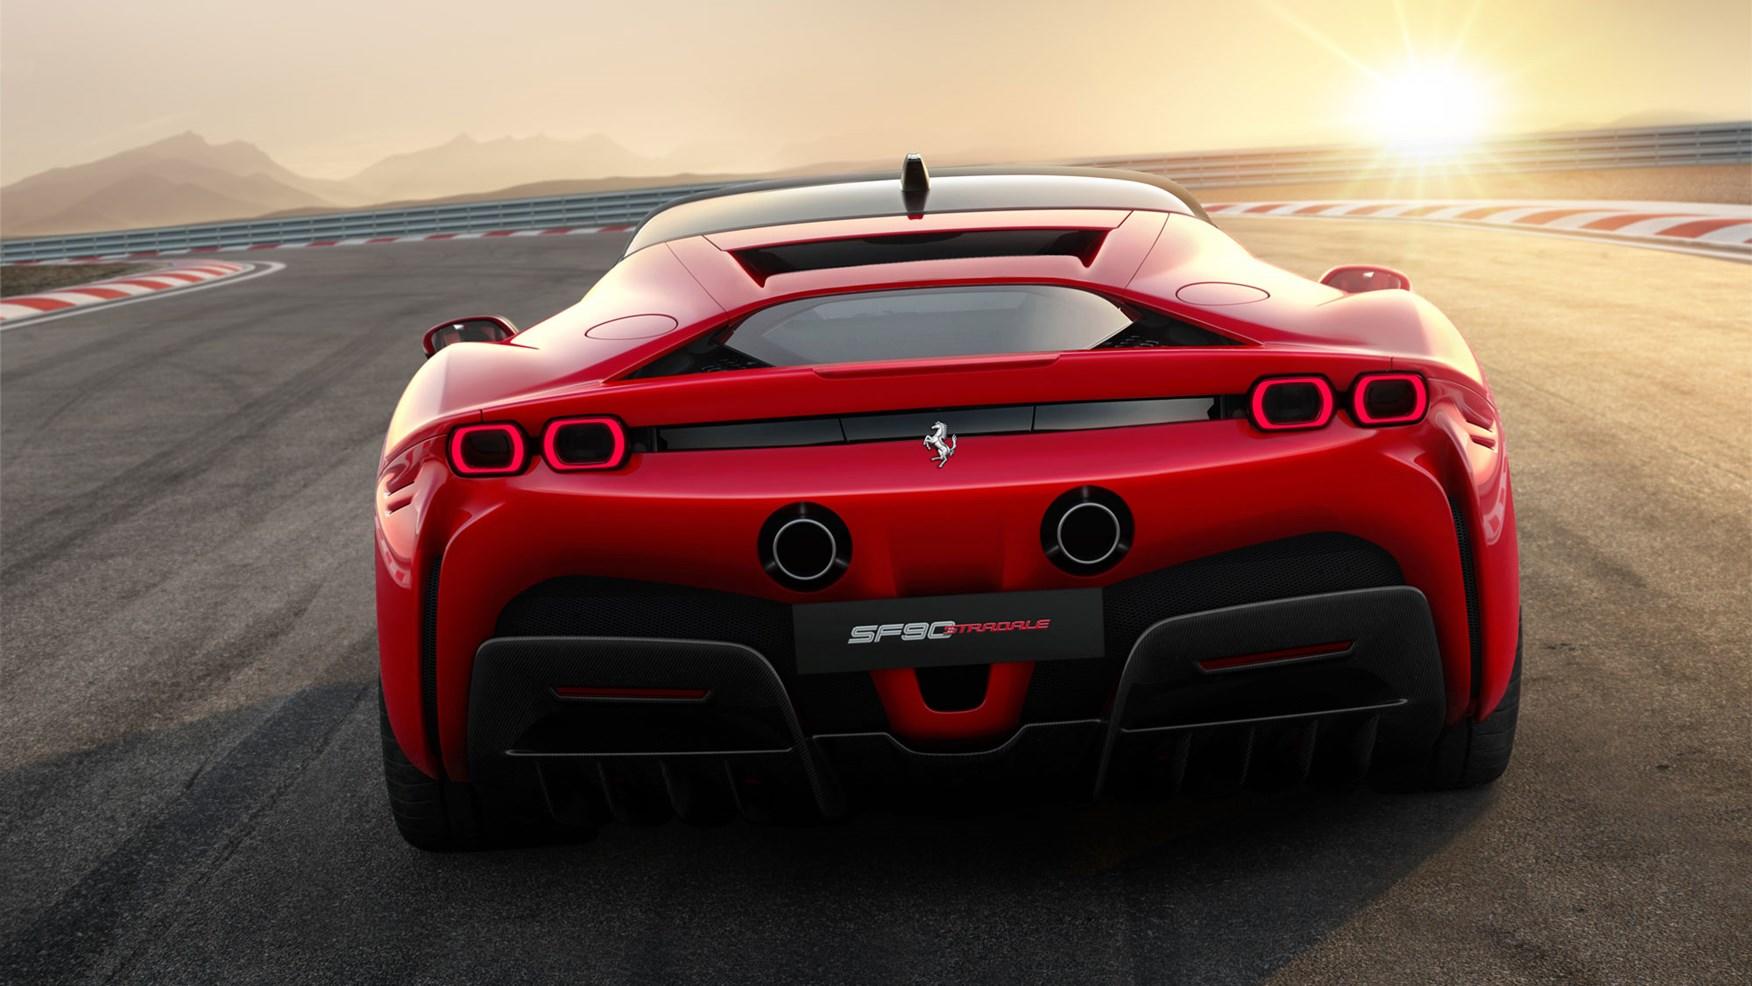 Η Ferrari έχει ήδη πατεντάρει ένα ηλεκτρικό supercar